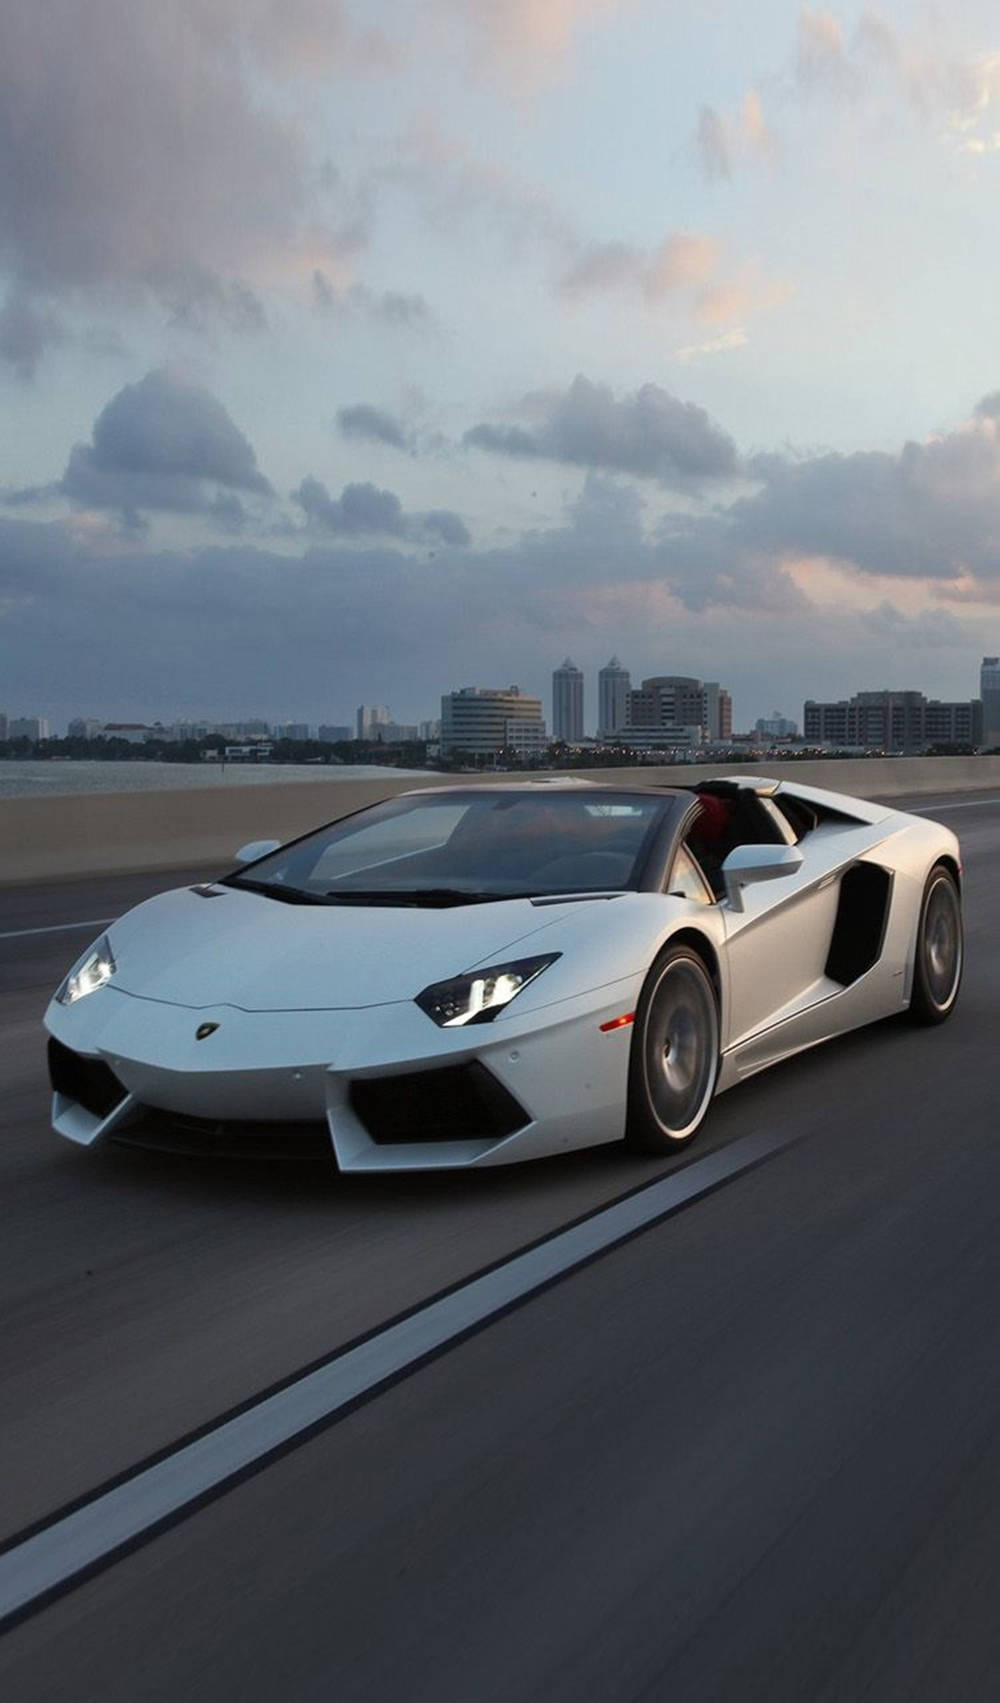 Amazing Photo For Iphone Lamborghini Theme Background